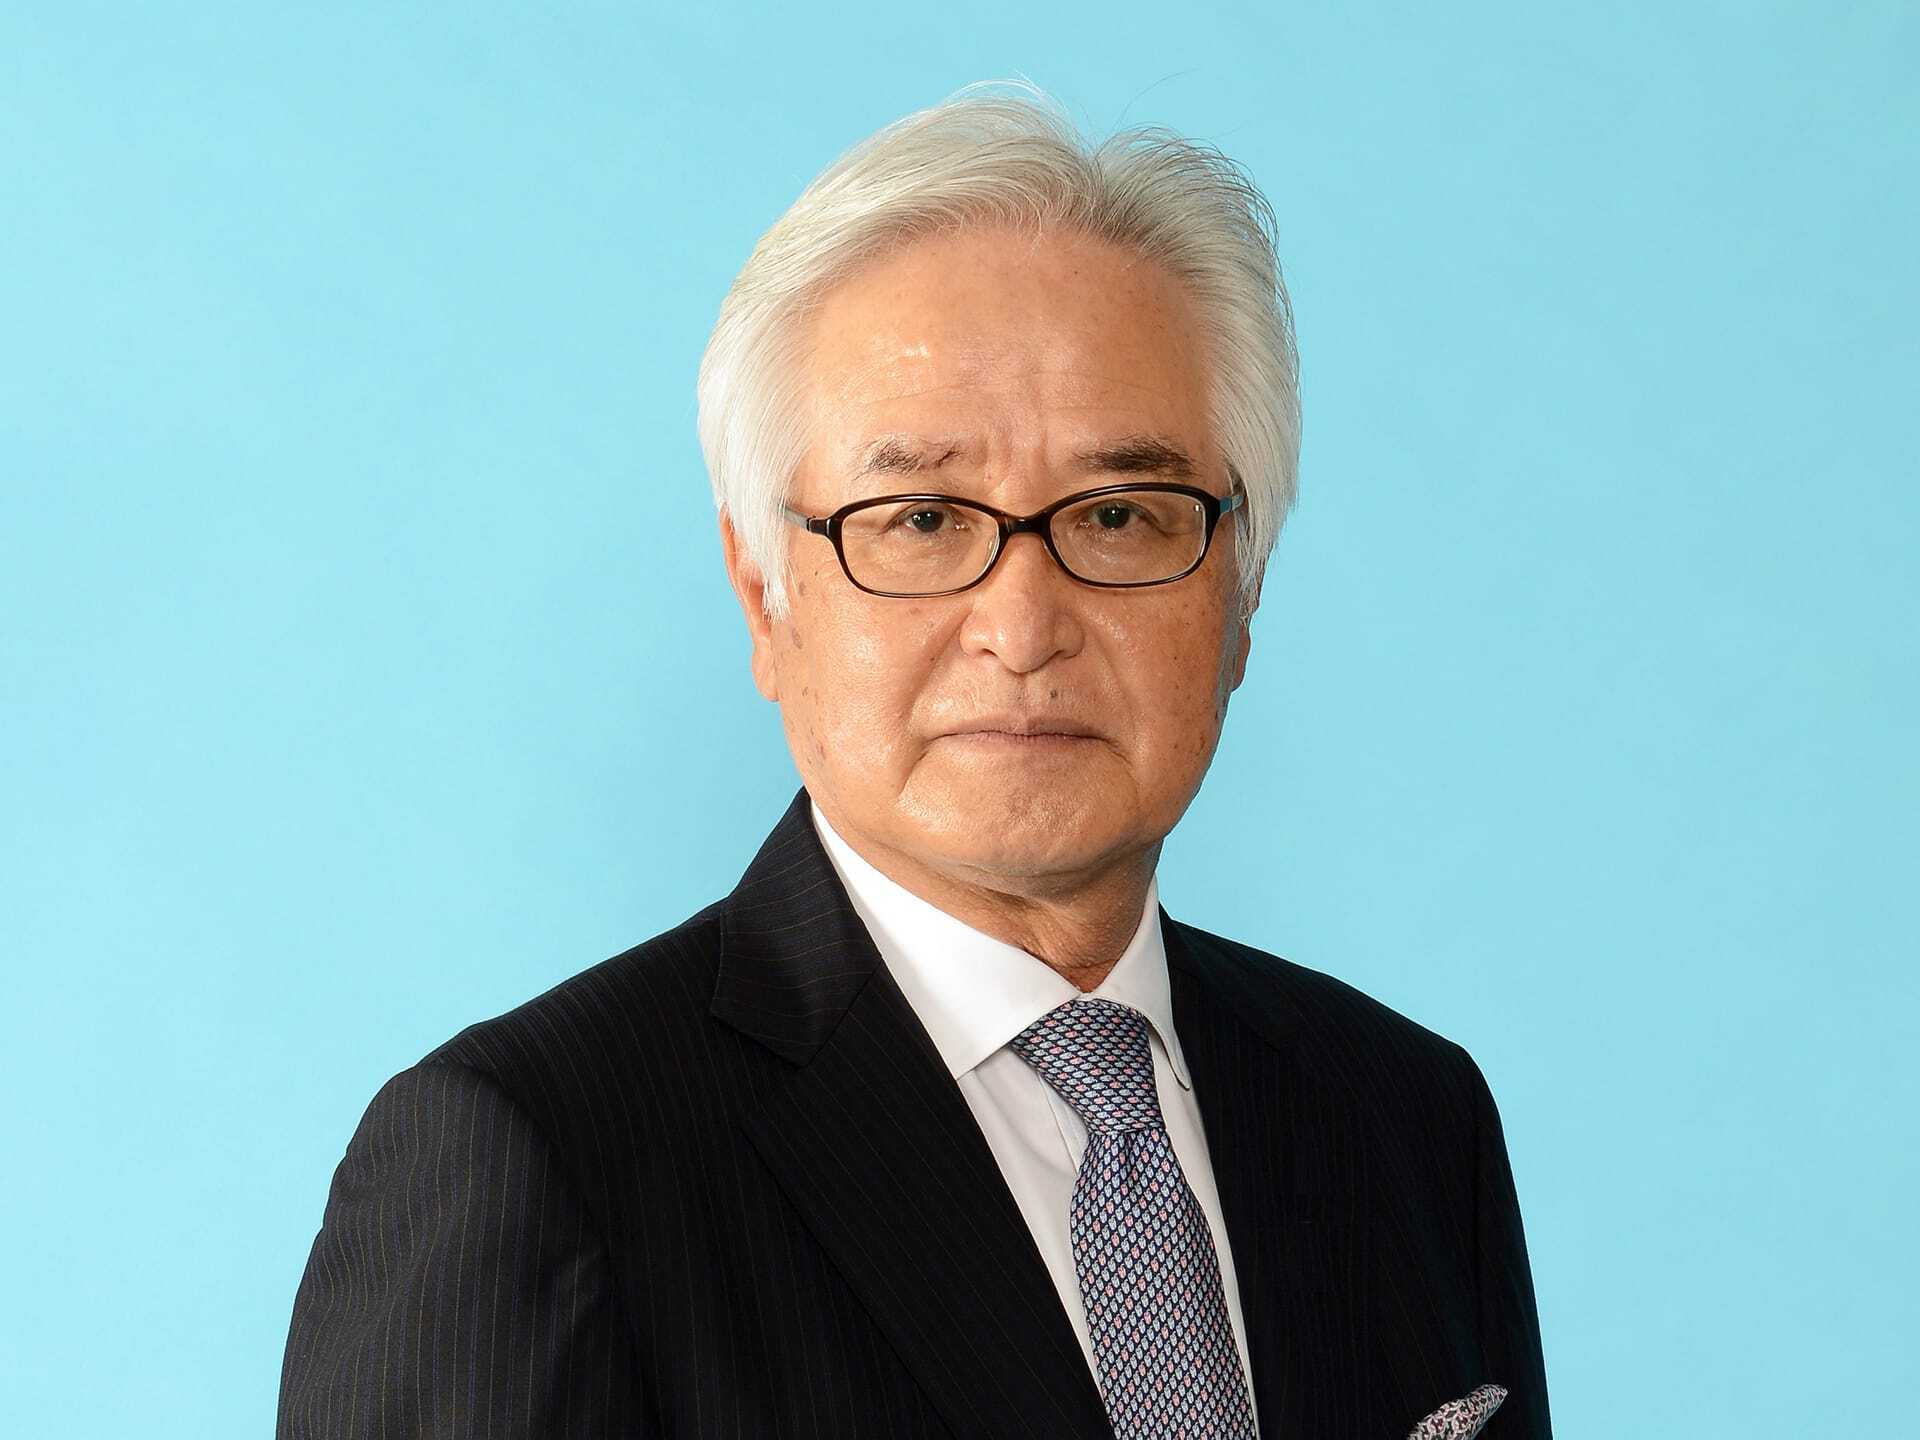 Portrait du président du conseil, M. Ikeda